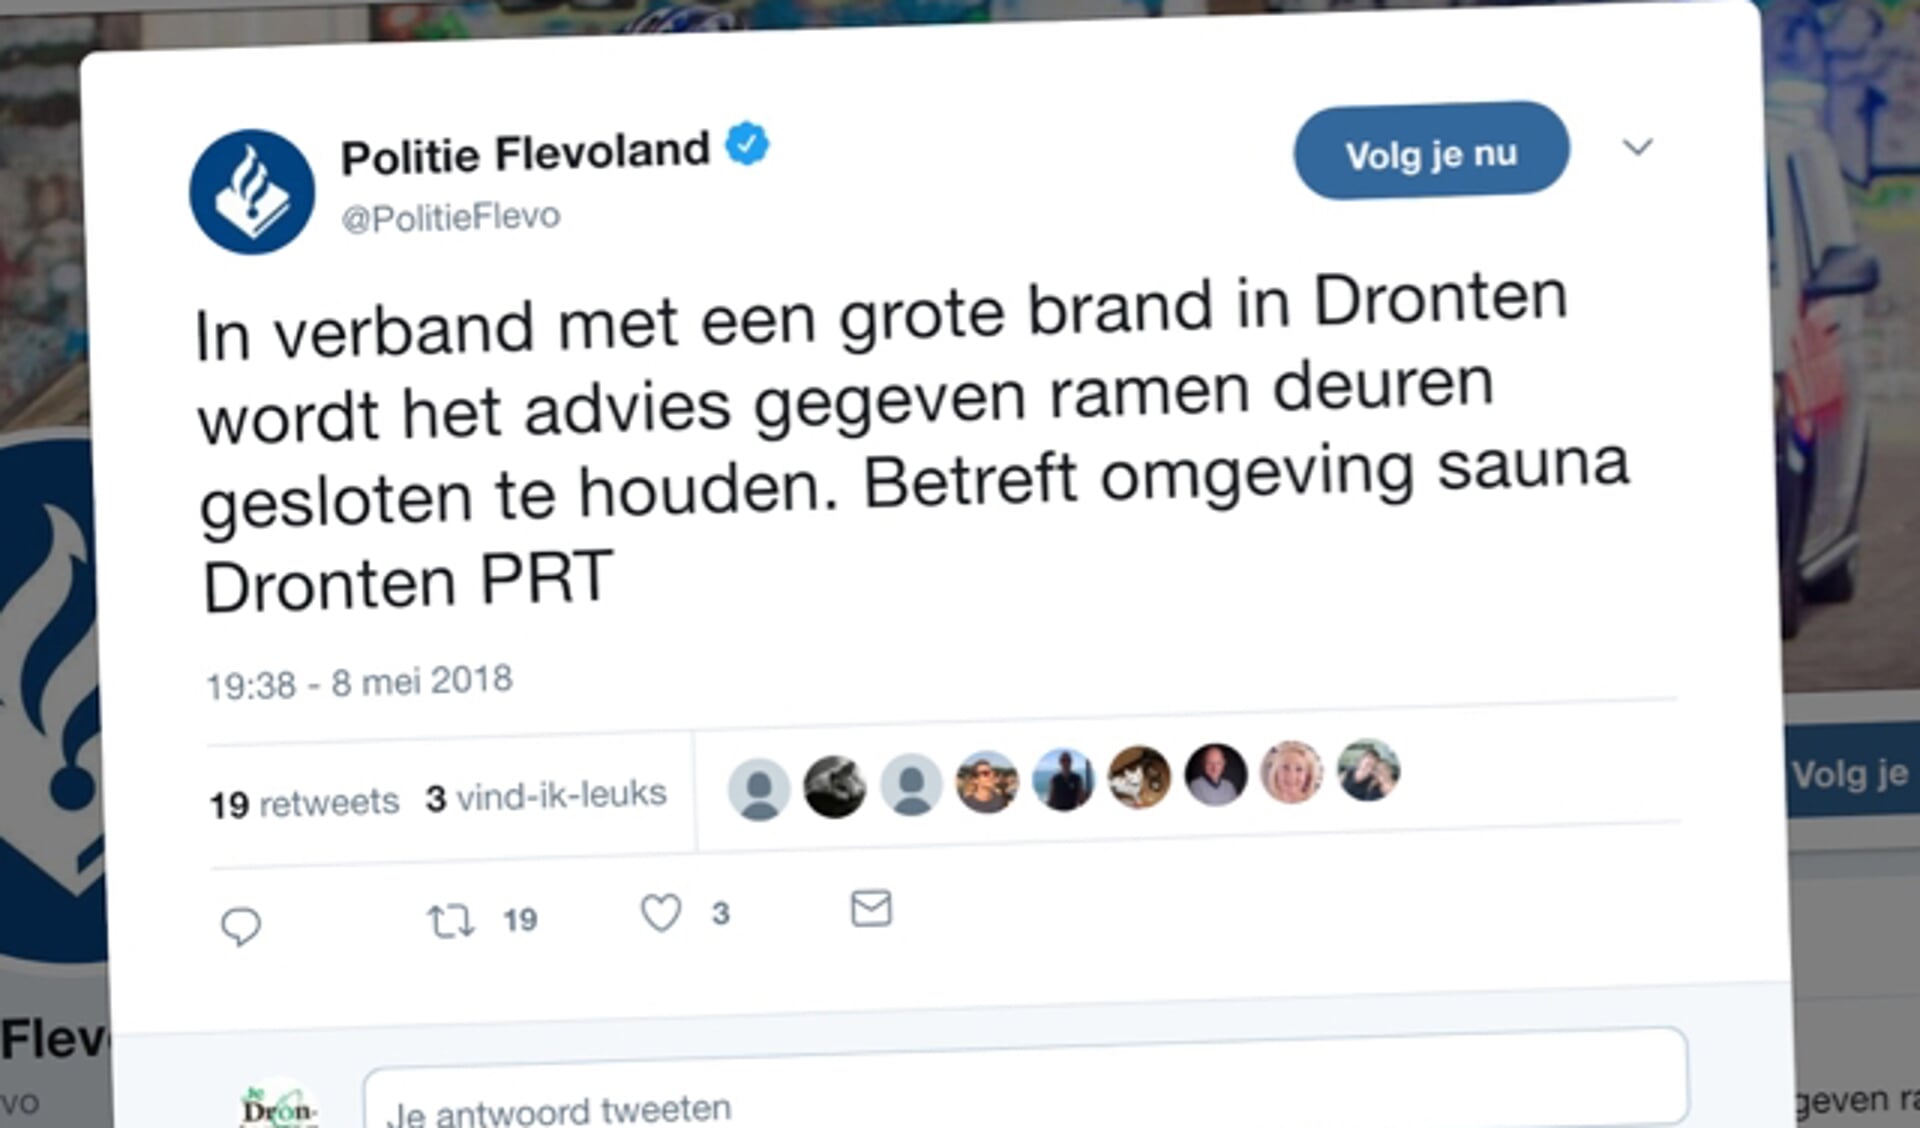  De tweet van politie Flevoland